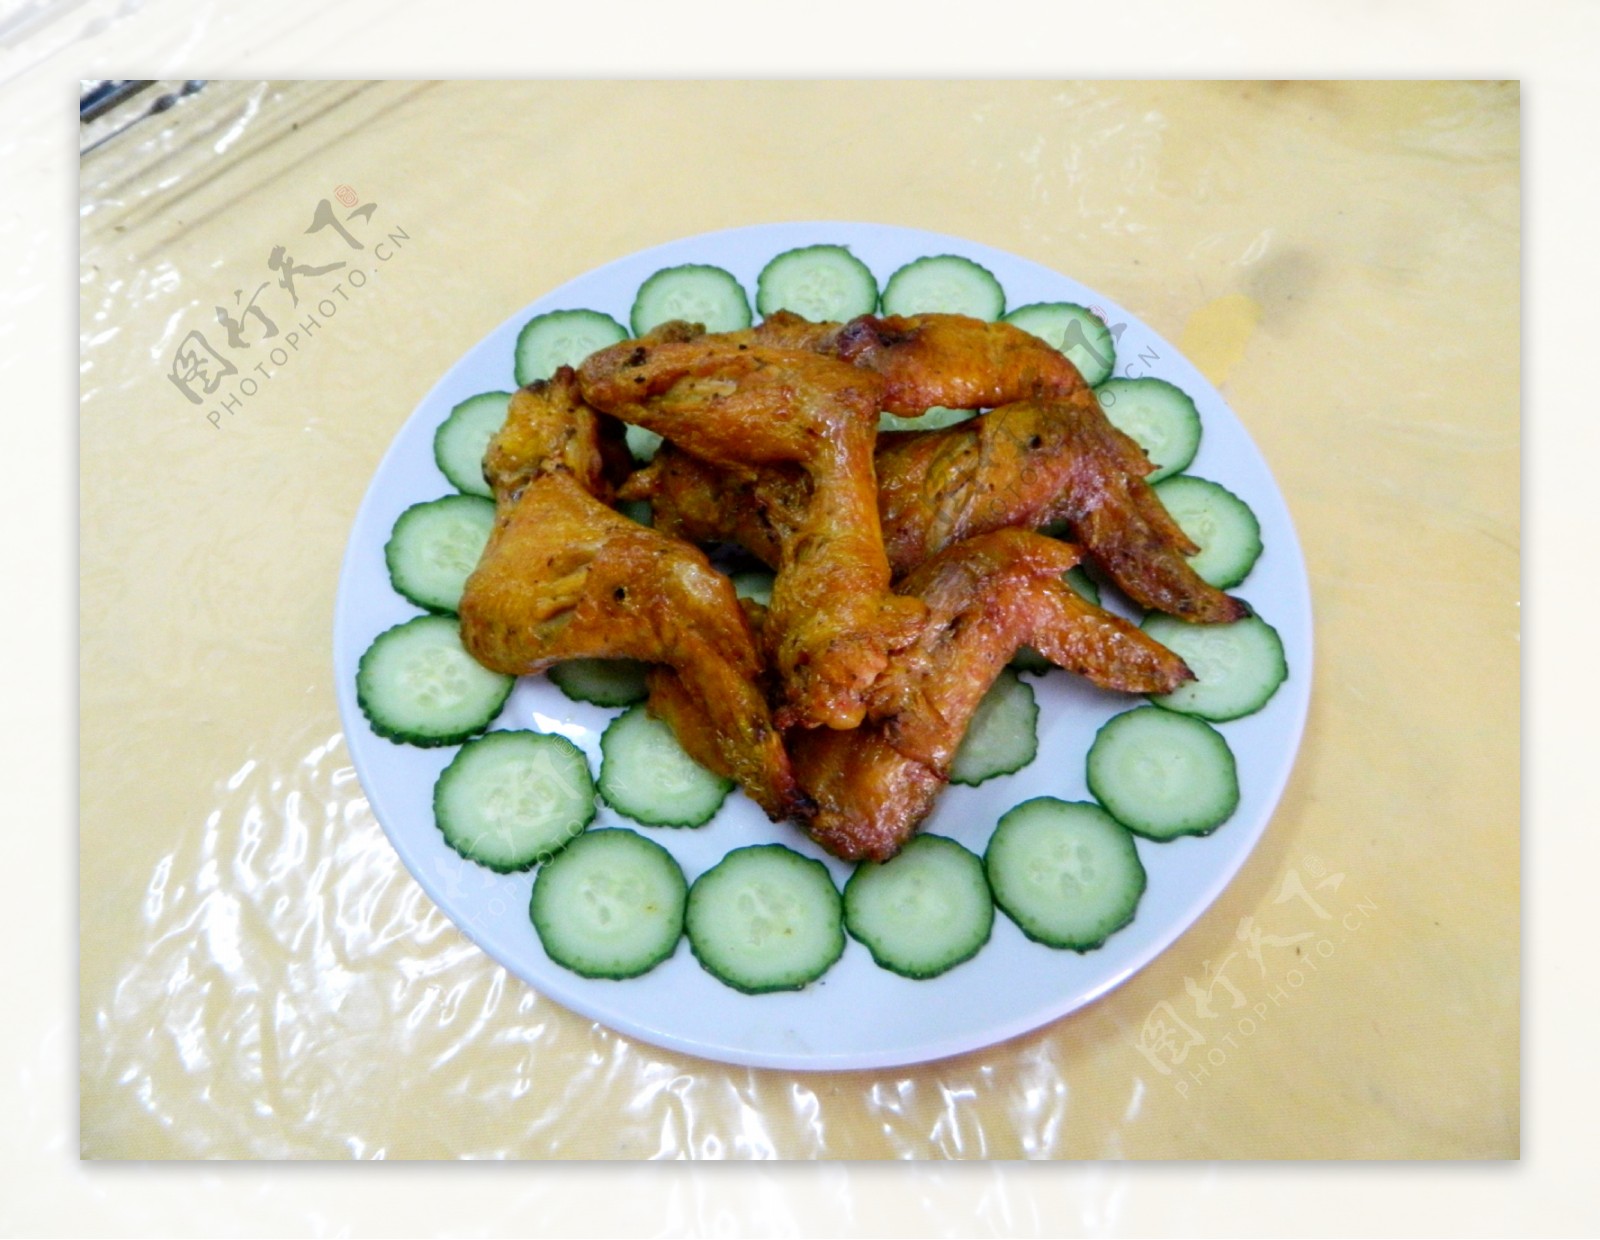 新疆美食烤鸡翅图片